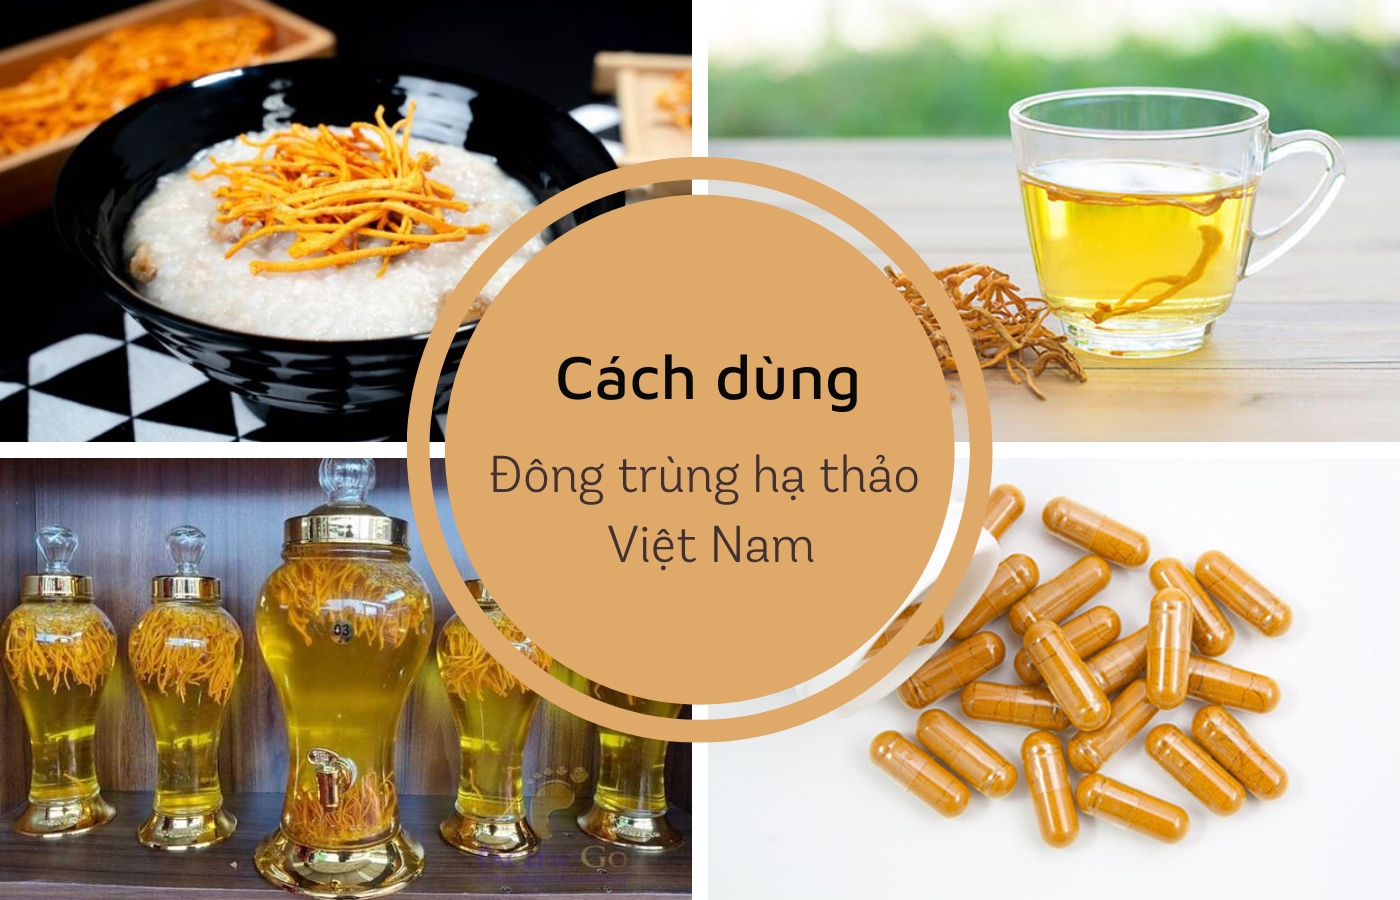 Một số cách chế biến của đông trùng hạ thảo Việt Nam